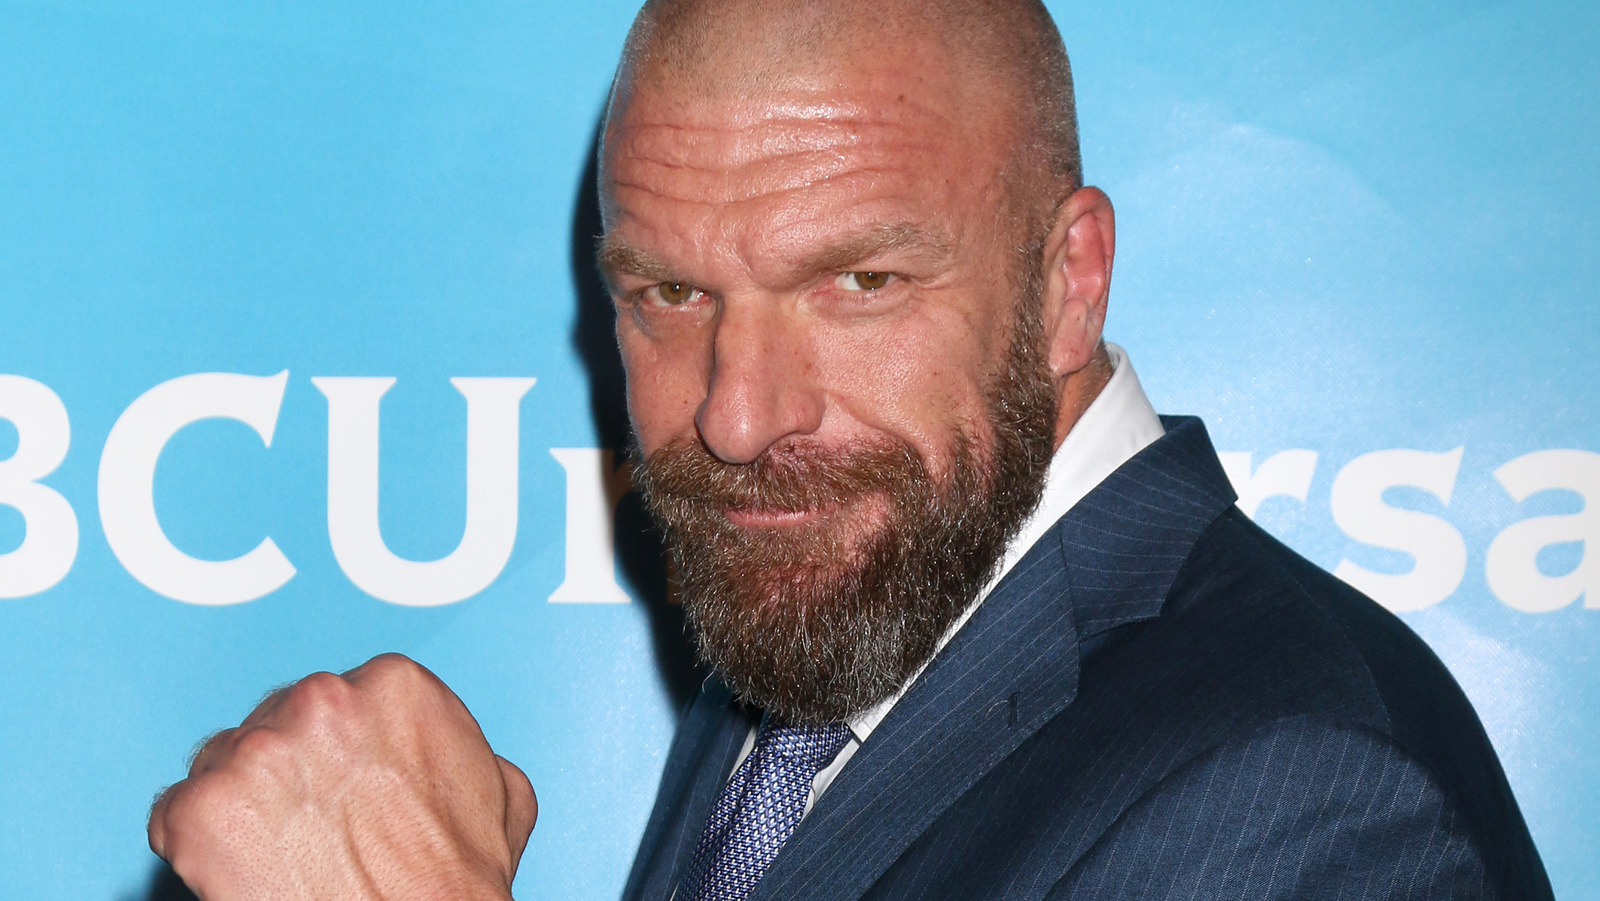 La posible relación WWE-AJPW gira en torno a un 'consultor' desconocido - Exclusivo